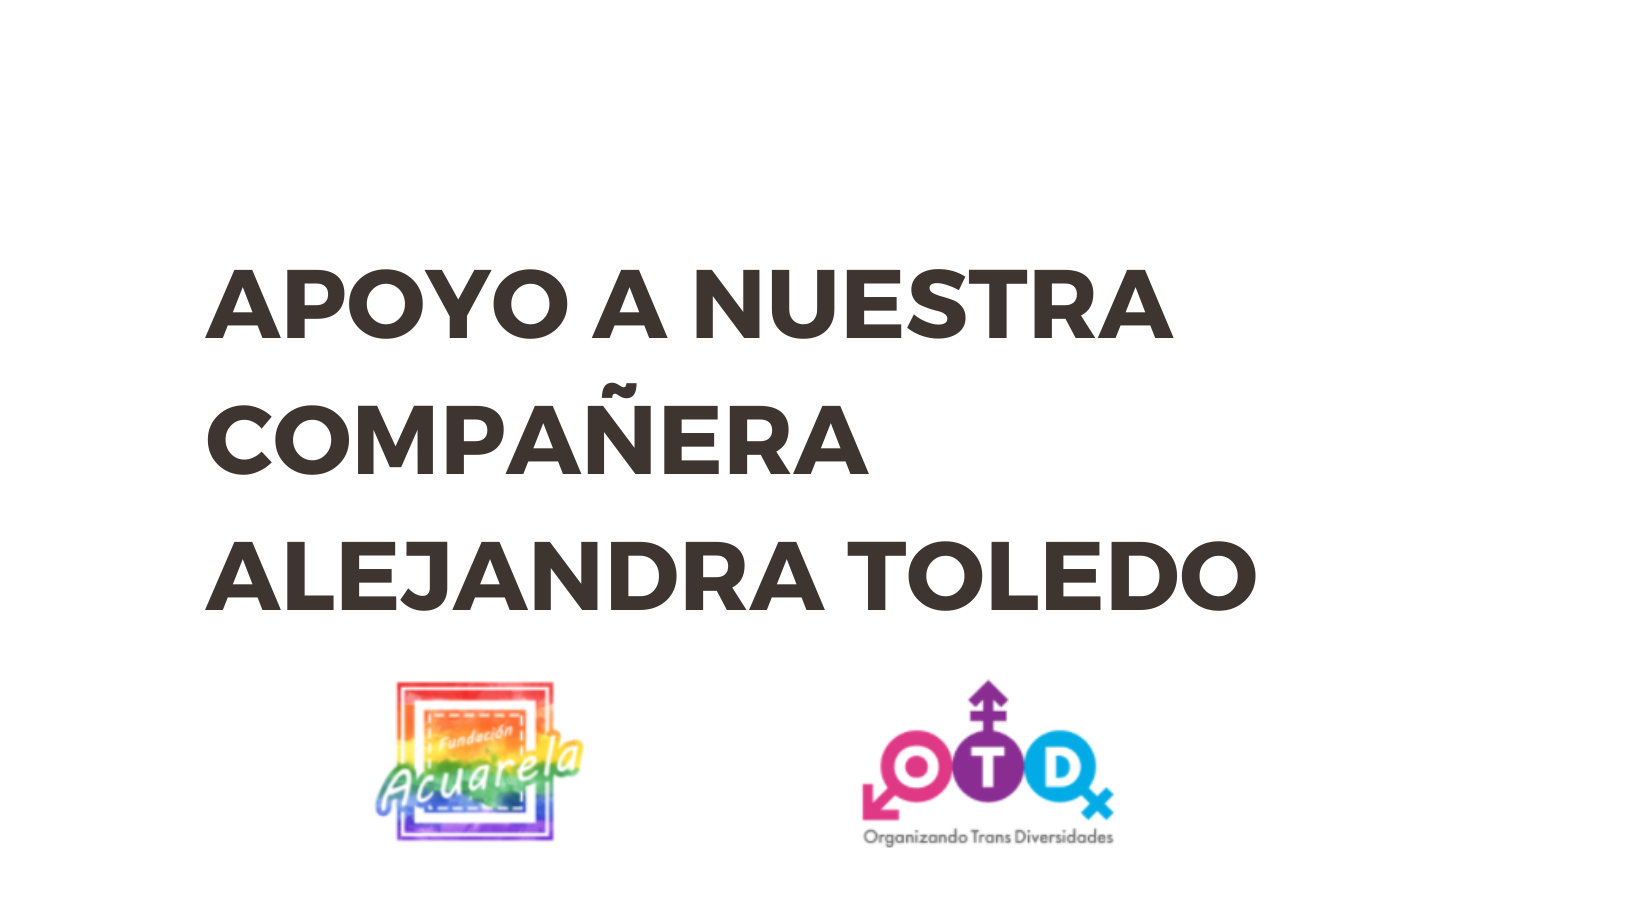 Comunicación en apoyo a nuestra compañera Alejandra Toledo